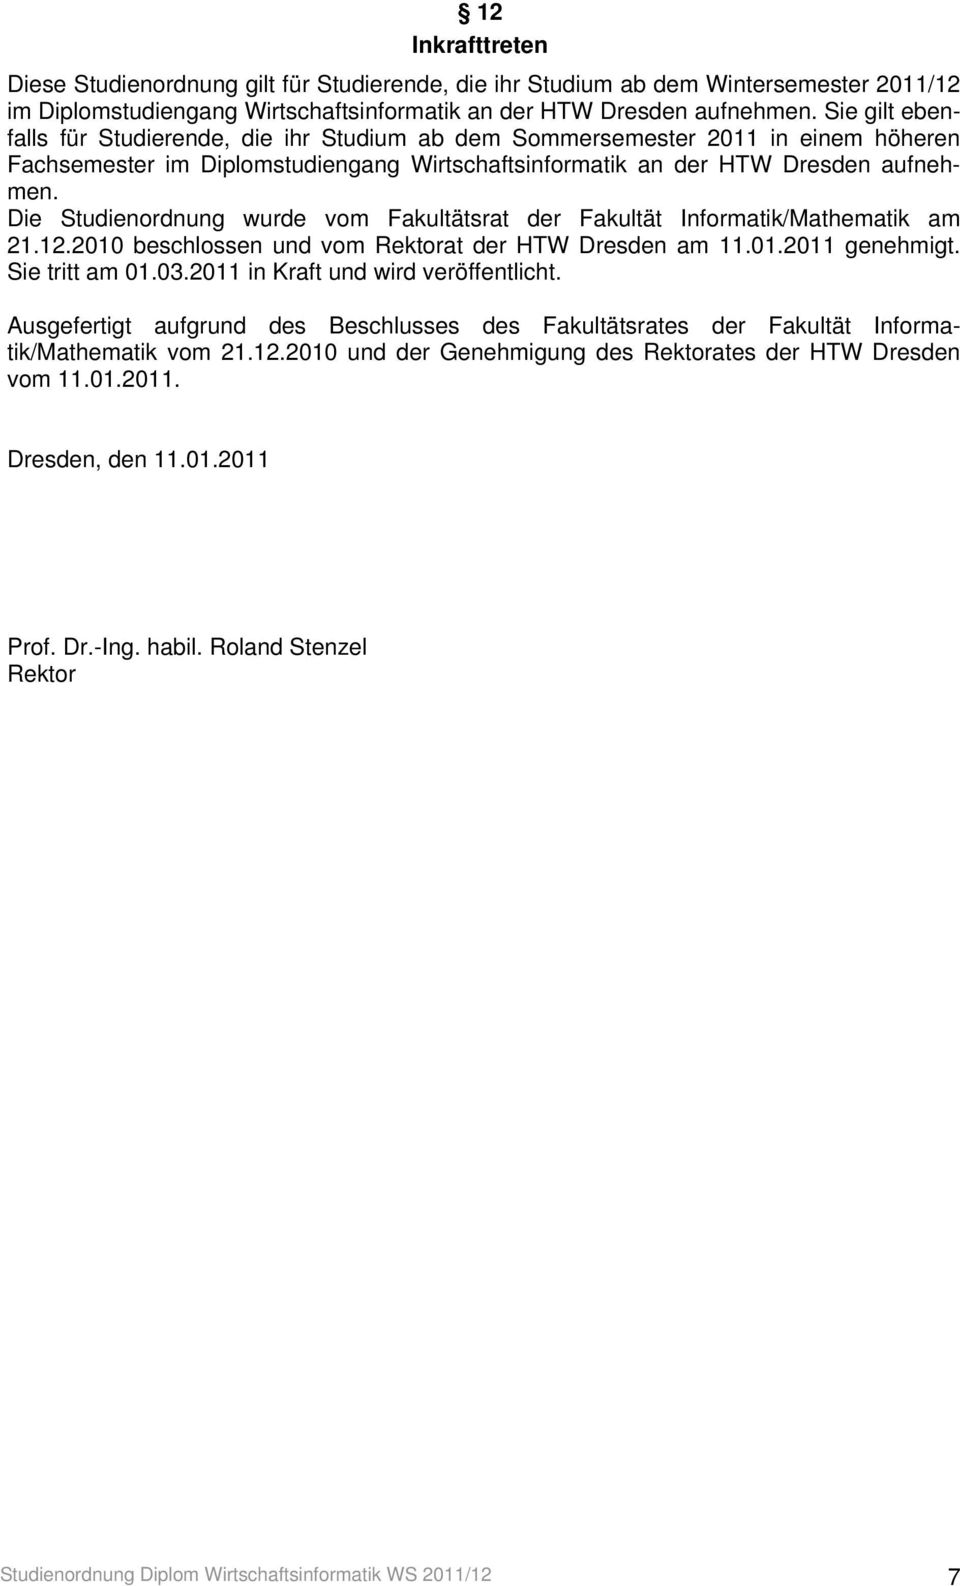 Die Studienordnung wurde vom Fakultätsrat der Fakultät Informatik/Mathematik am 21.12.2010 beschlossen und vom Rektorat der HTW Dresden am 11.01.2011 genehmigt. Sie tritt am 01.03.